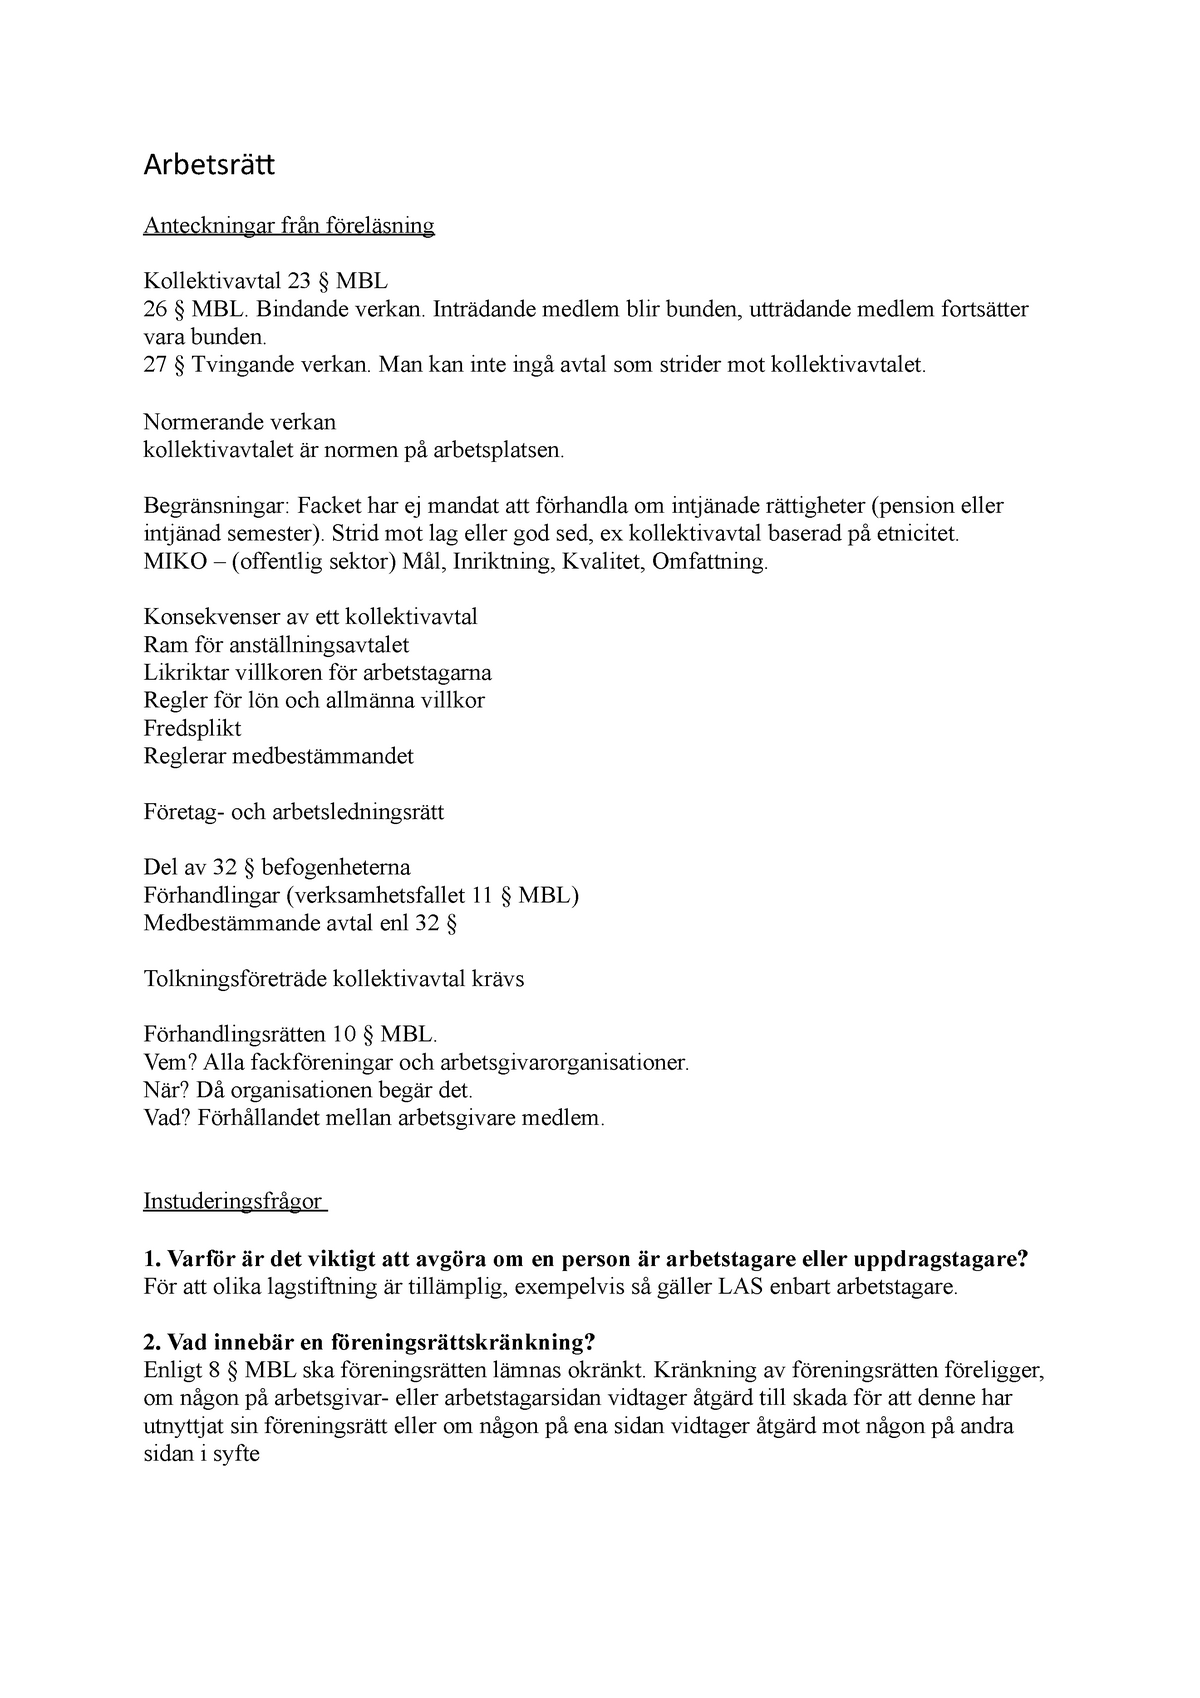 Arbetsrätt - instuderingsfrågor - Arbetsrätt Anteckningar från föreläsning  Kollektivavtal 23 § MBL - Studocu